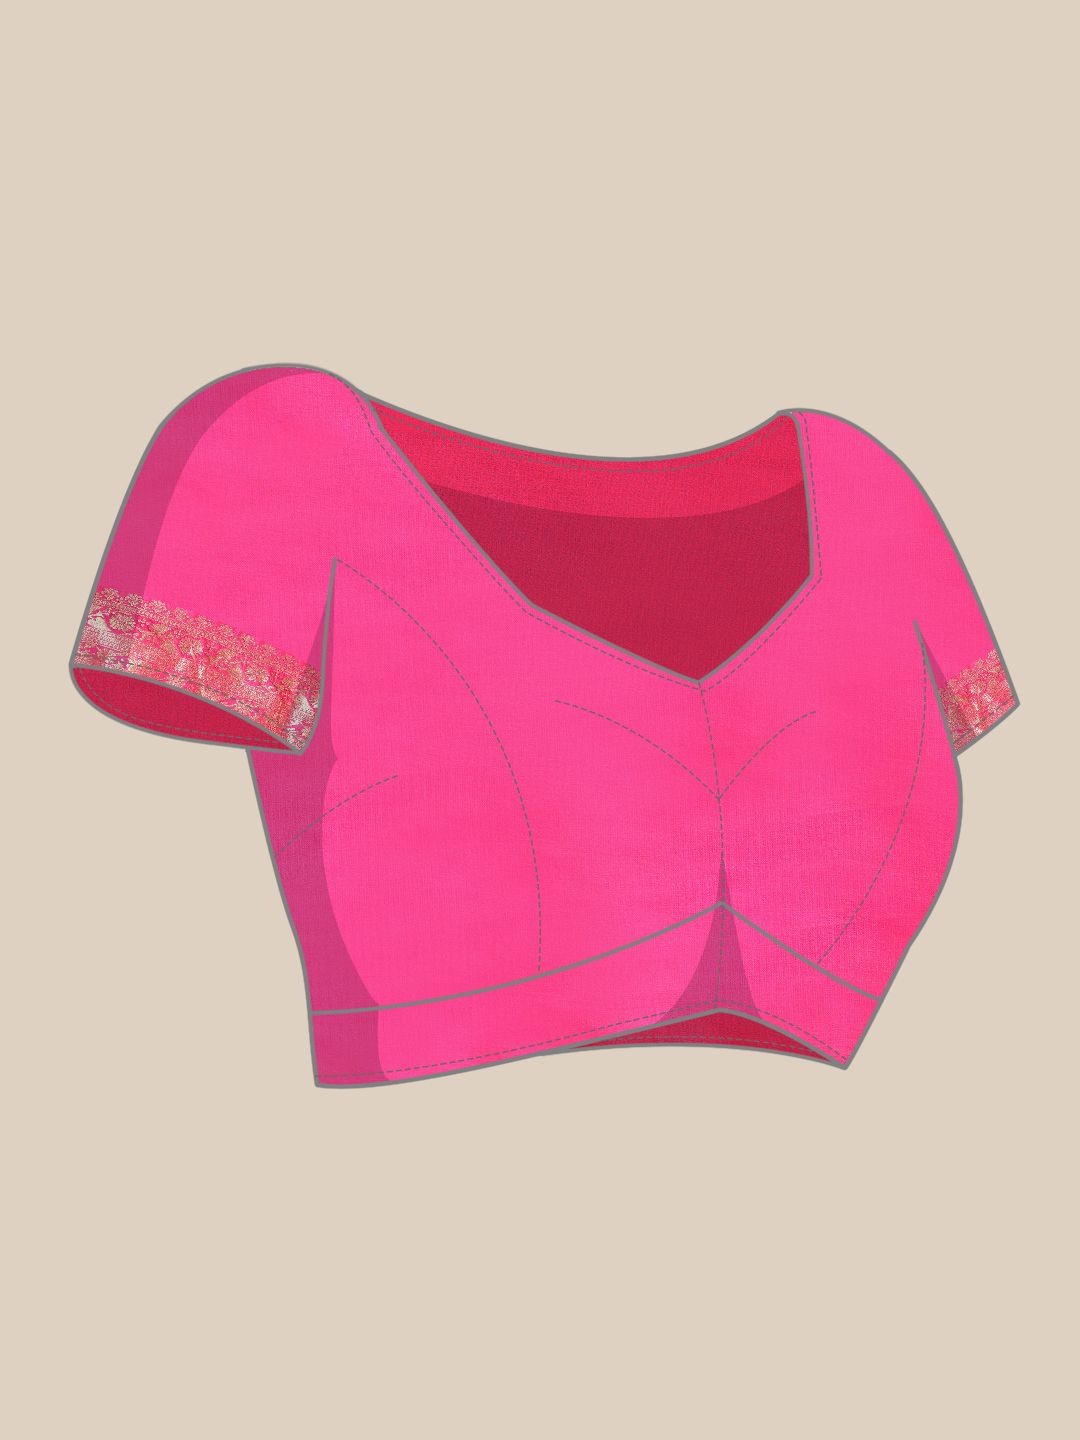 Pink Color Zari Woven Banarasi Silk Sarees and Small Weaving Design